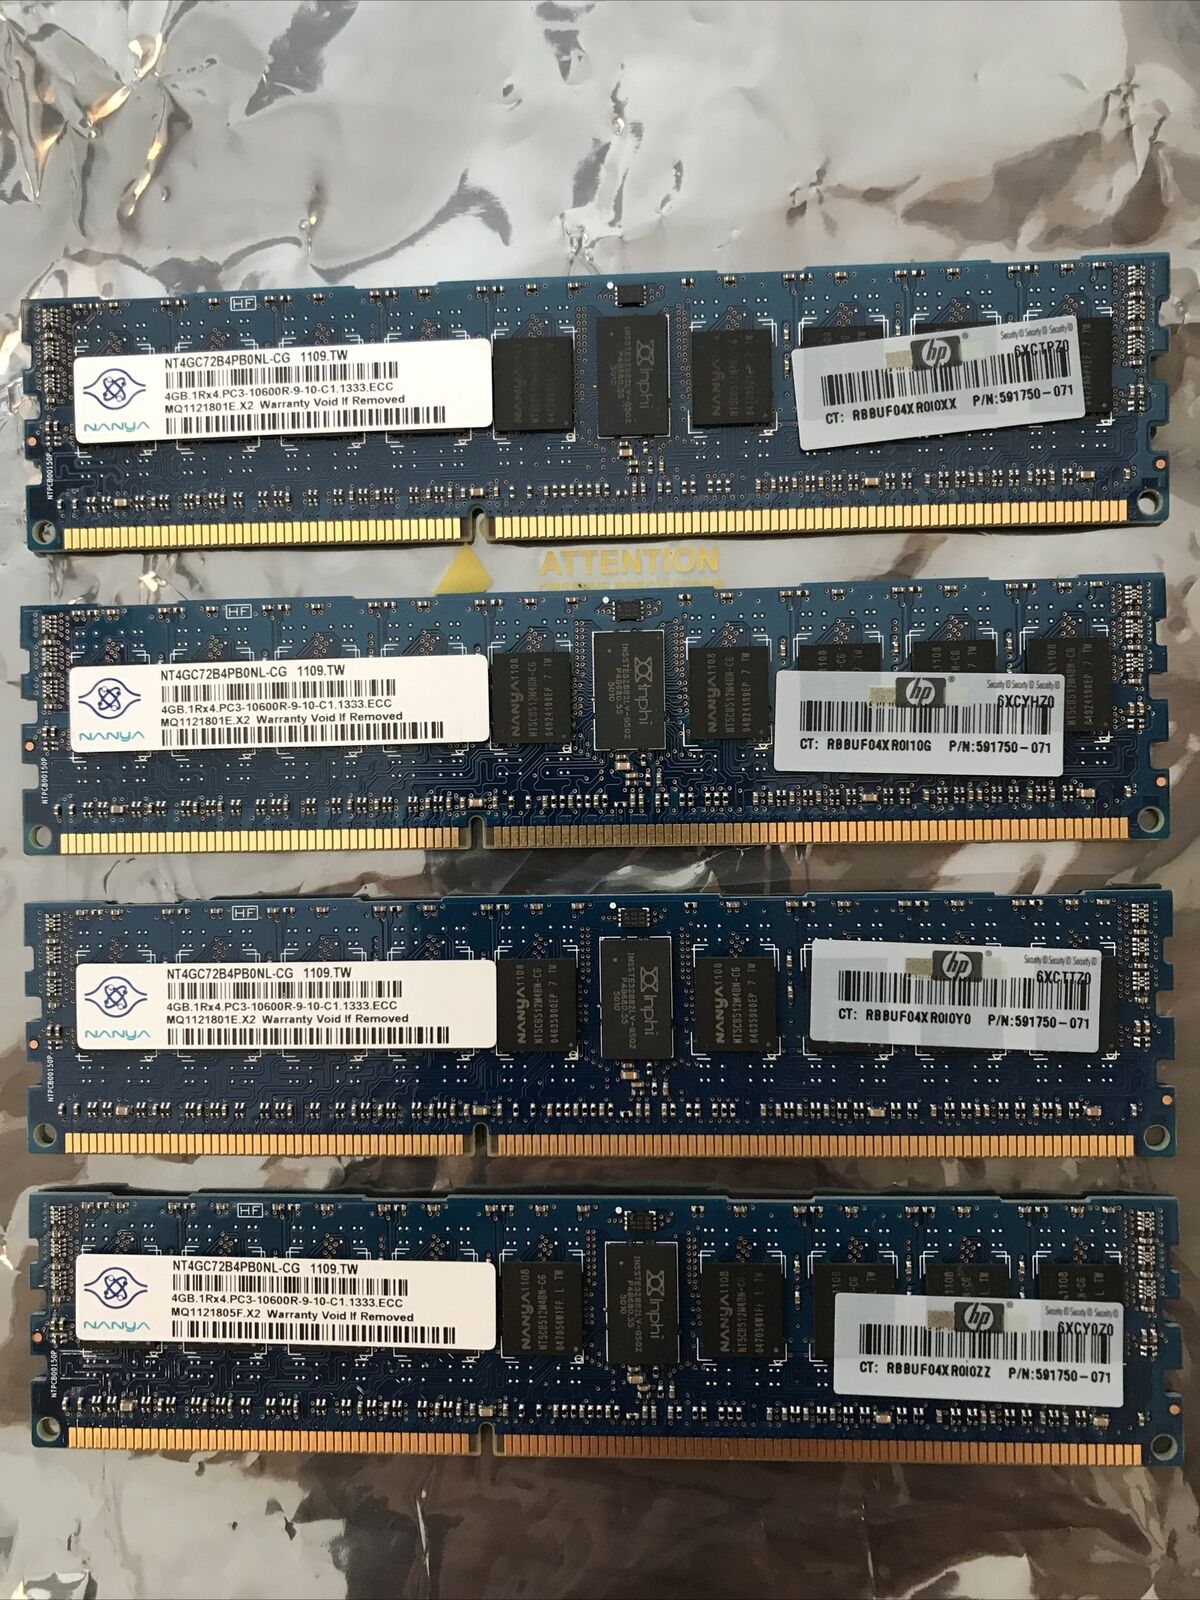 HP Nanya 16GB (4x4GB) NT4GC72B4PB0NL-CG 1Rx4 PC3-10600R Server Memory RAM